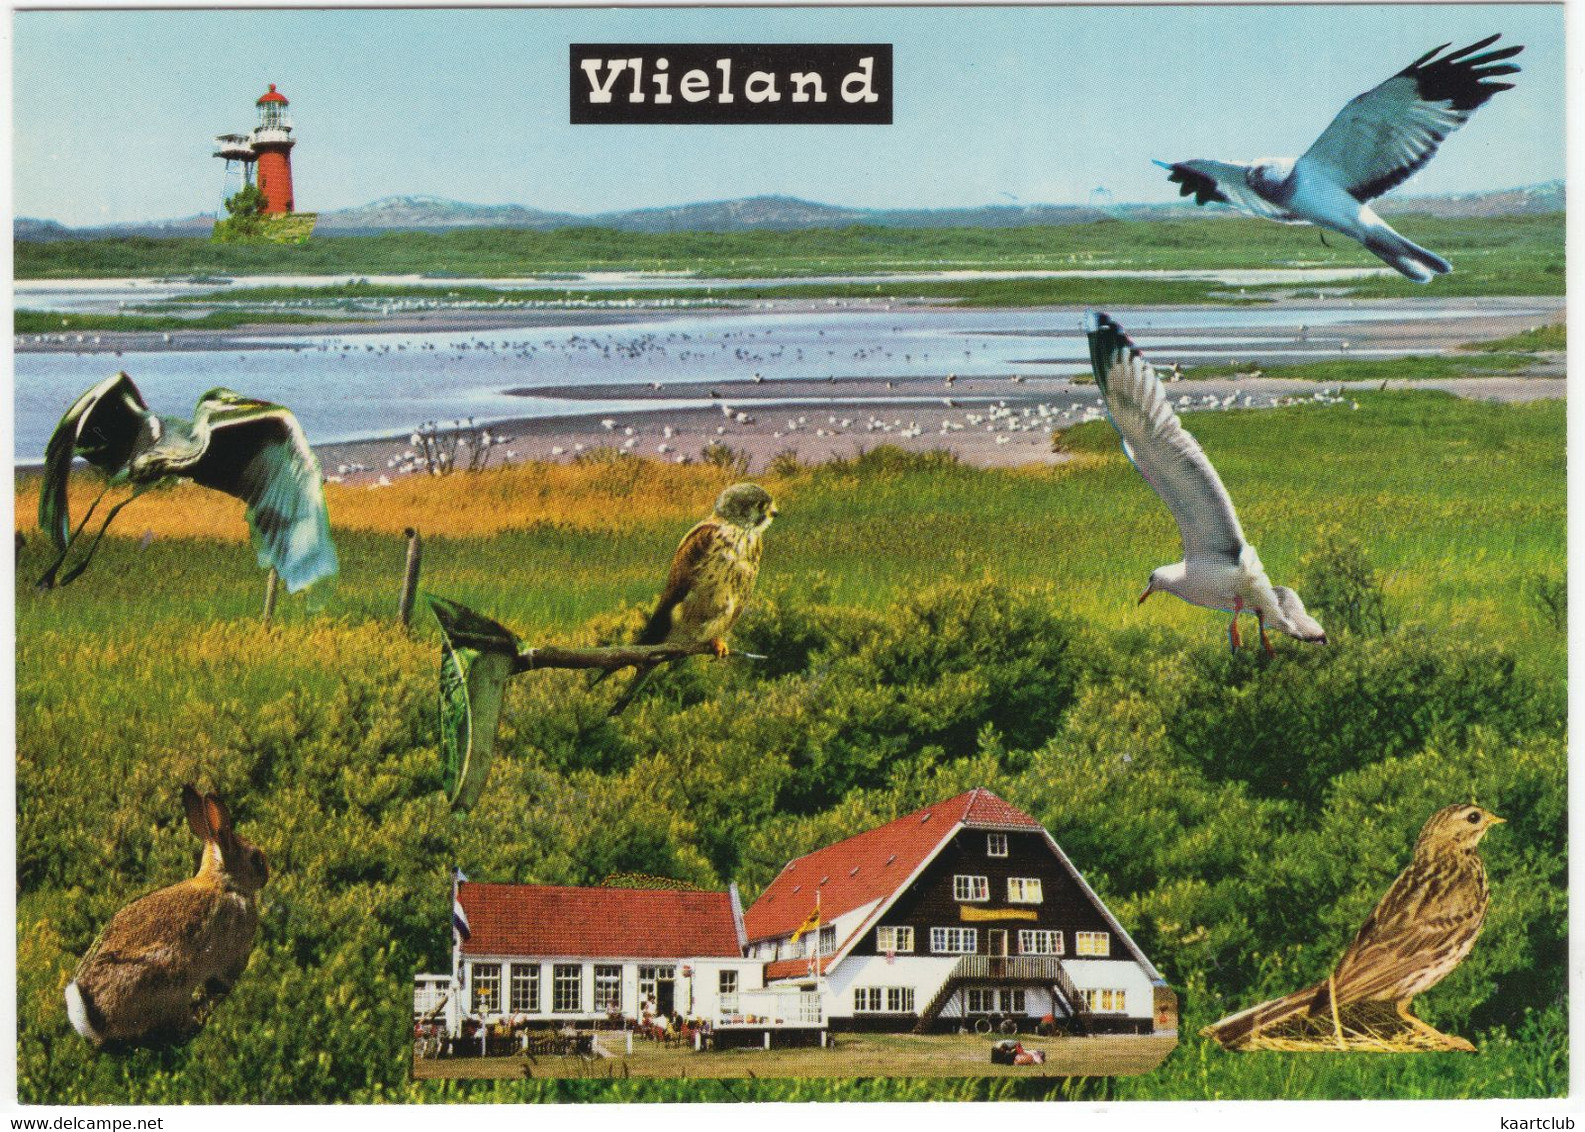 Vlieland - Dieren, Posthuis, Vuurtoren, Wad - (Nederland/Holland) - Nr. L 7756 - Vlieland